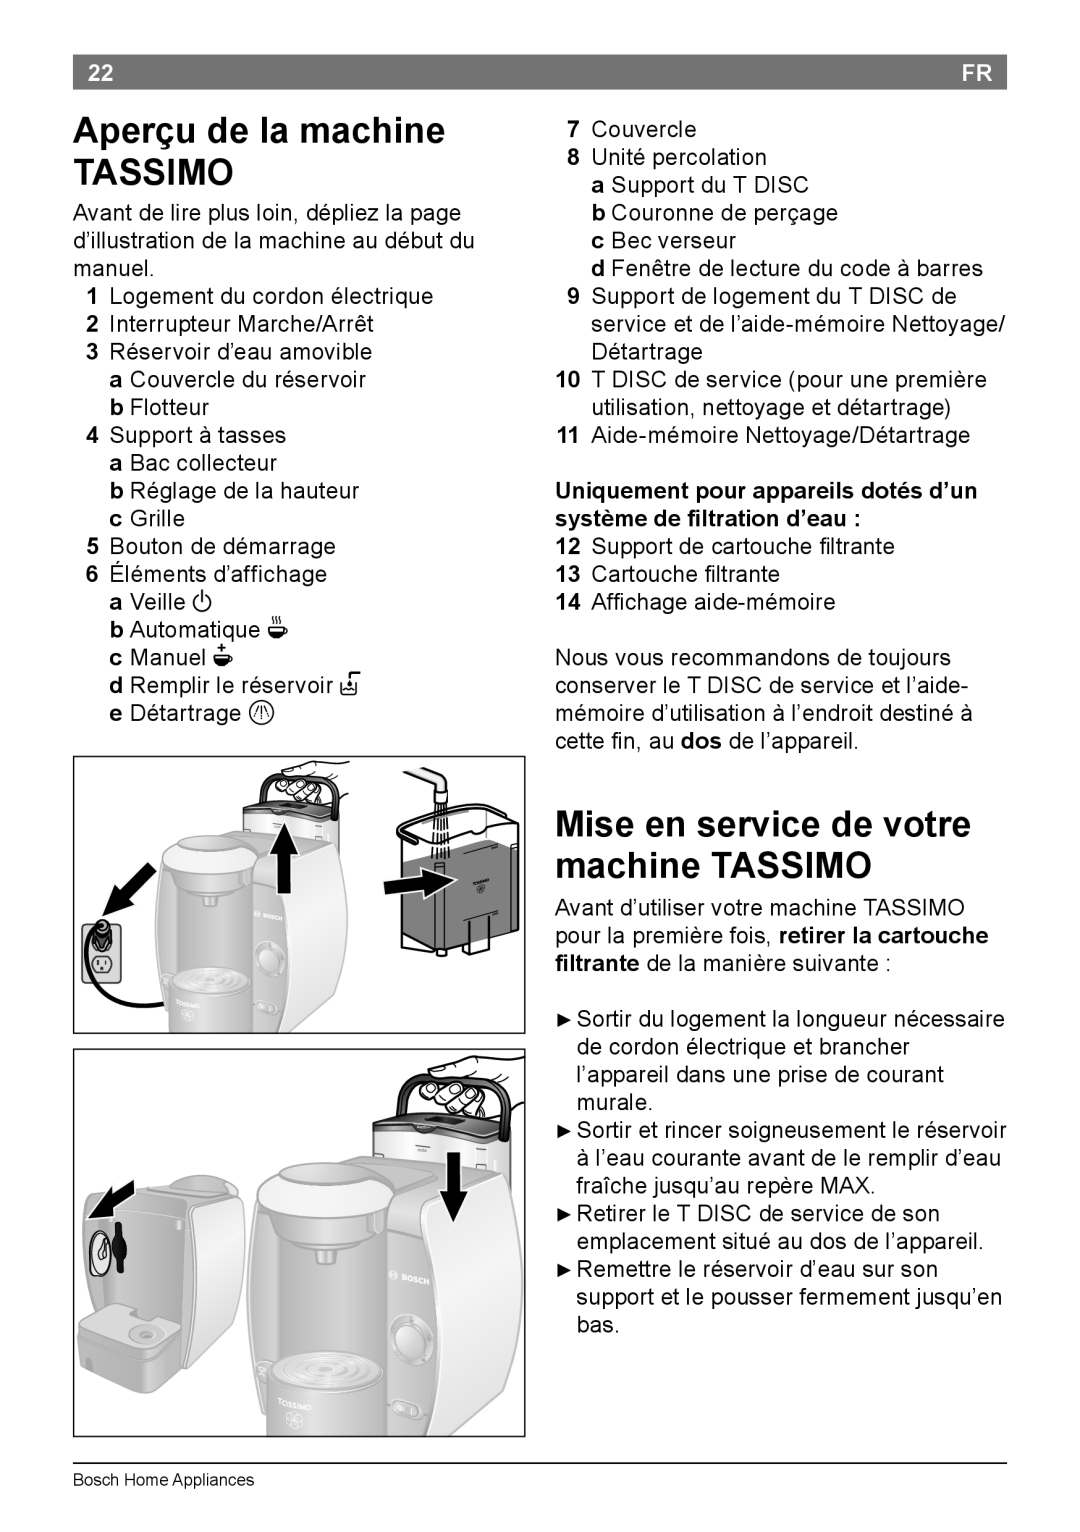 Bosch Appliances T45 instruction manual Aperçu de la machine TASSIMO, Mise en service de votre machine TASSIMO 